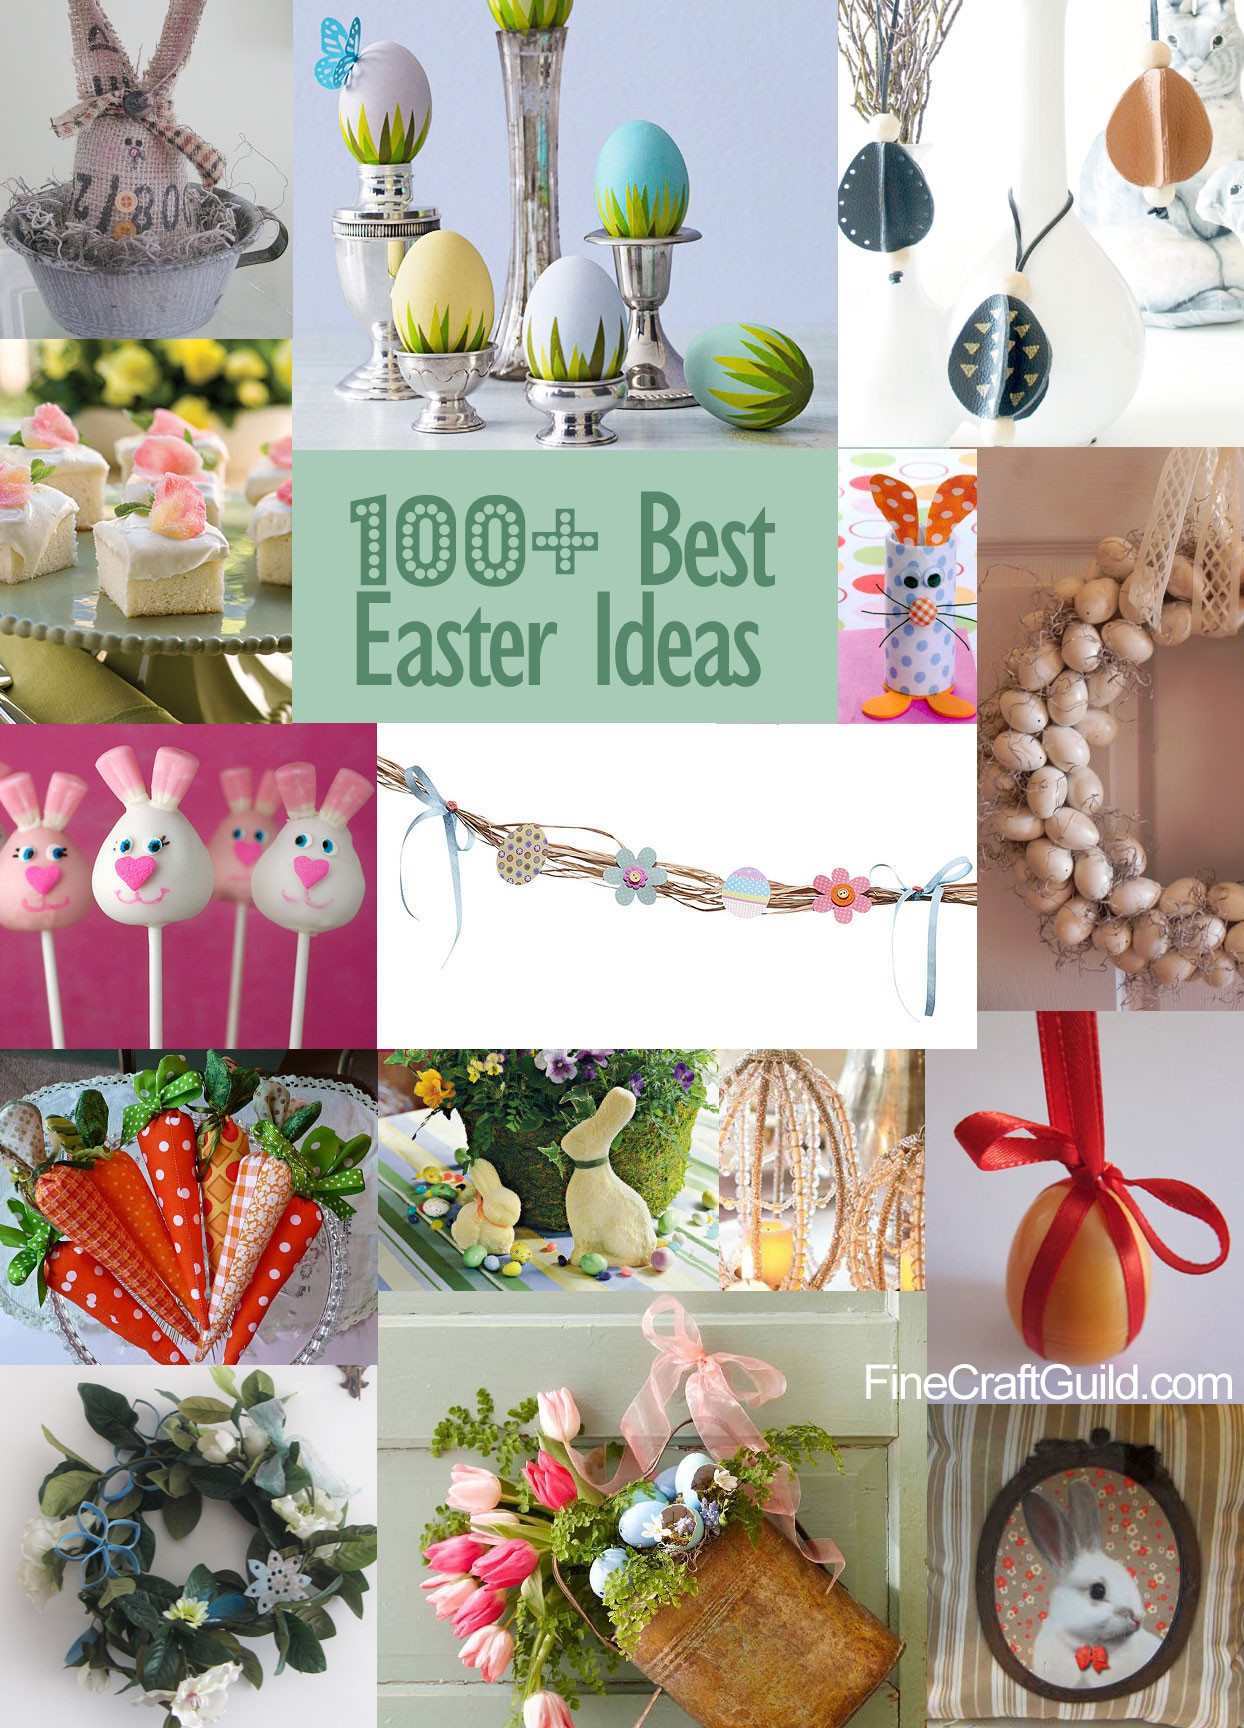 Ideas For Easter
 DIY Easter Eggs for Scavenger Hunt